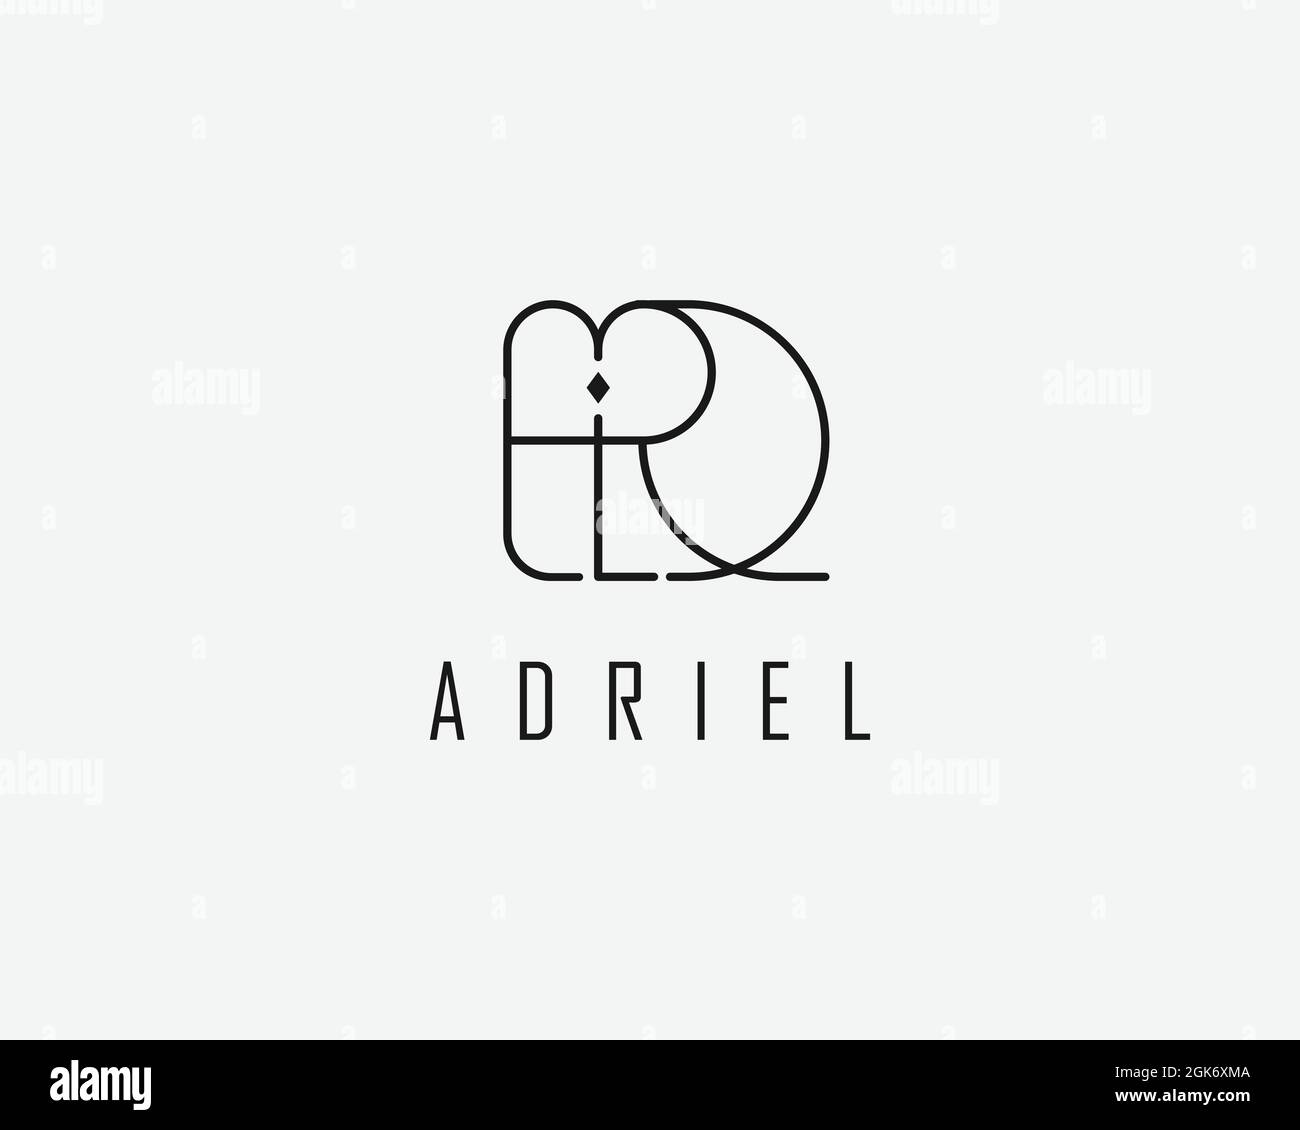 logo name Adriel usable logo design for private logo, business name card web icon, social media icon Stock Vector